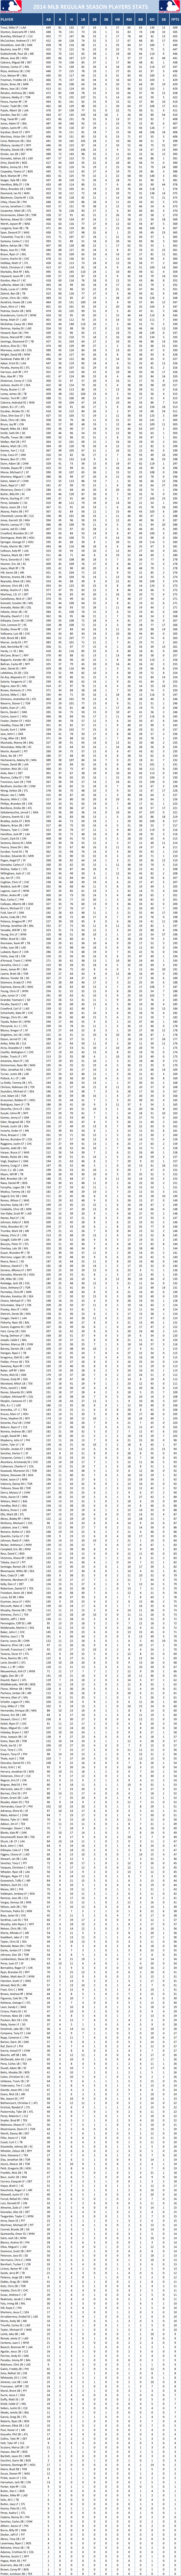 2014 Major League Baseball Pool Season Player Stats